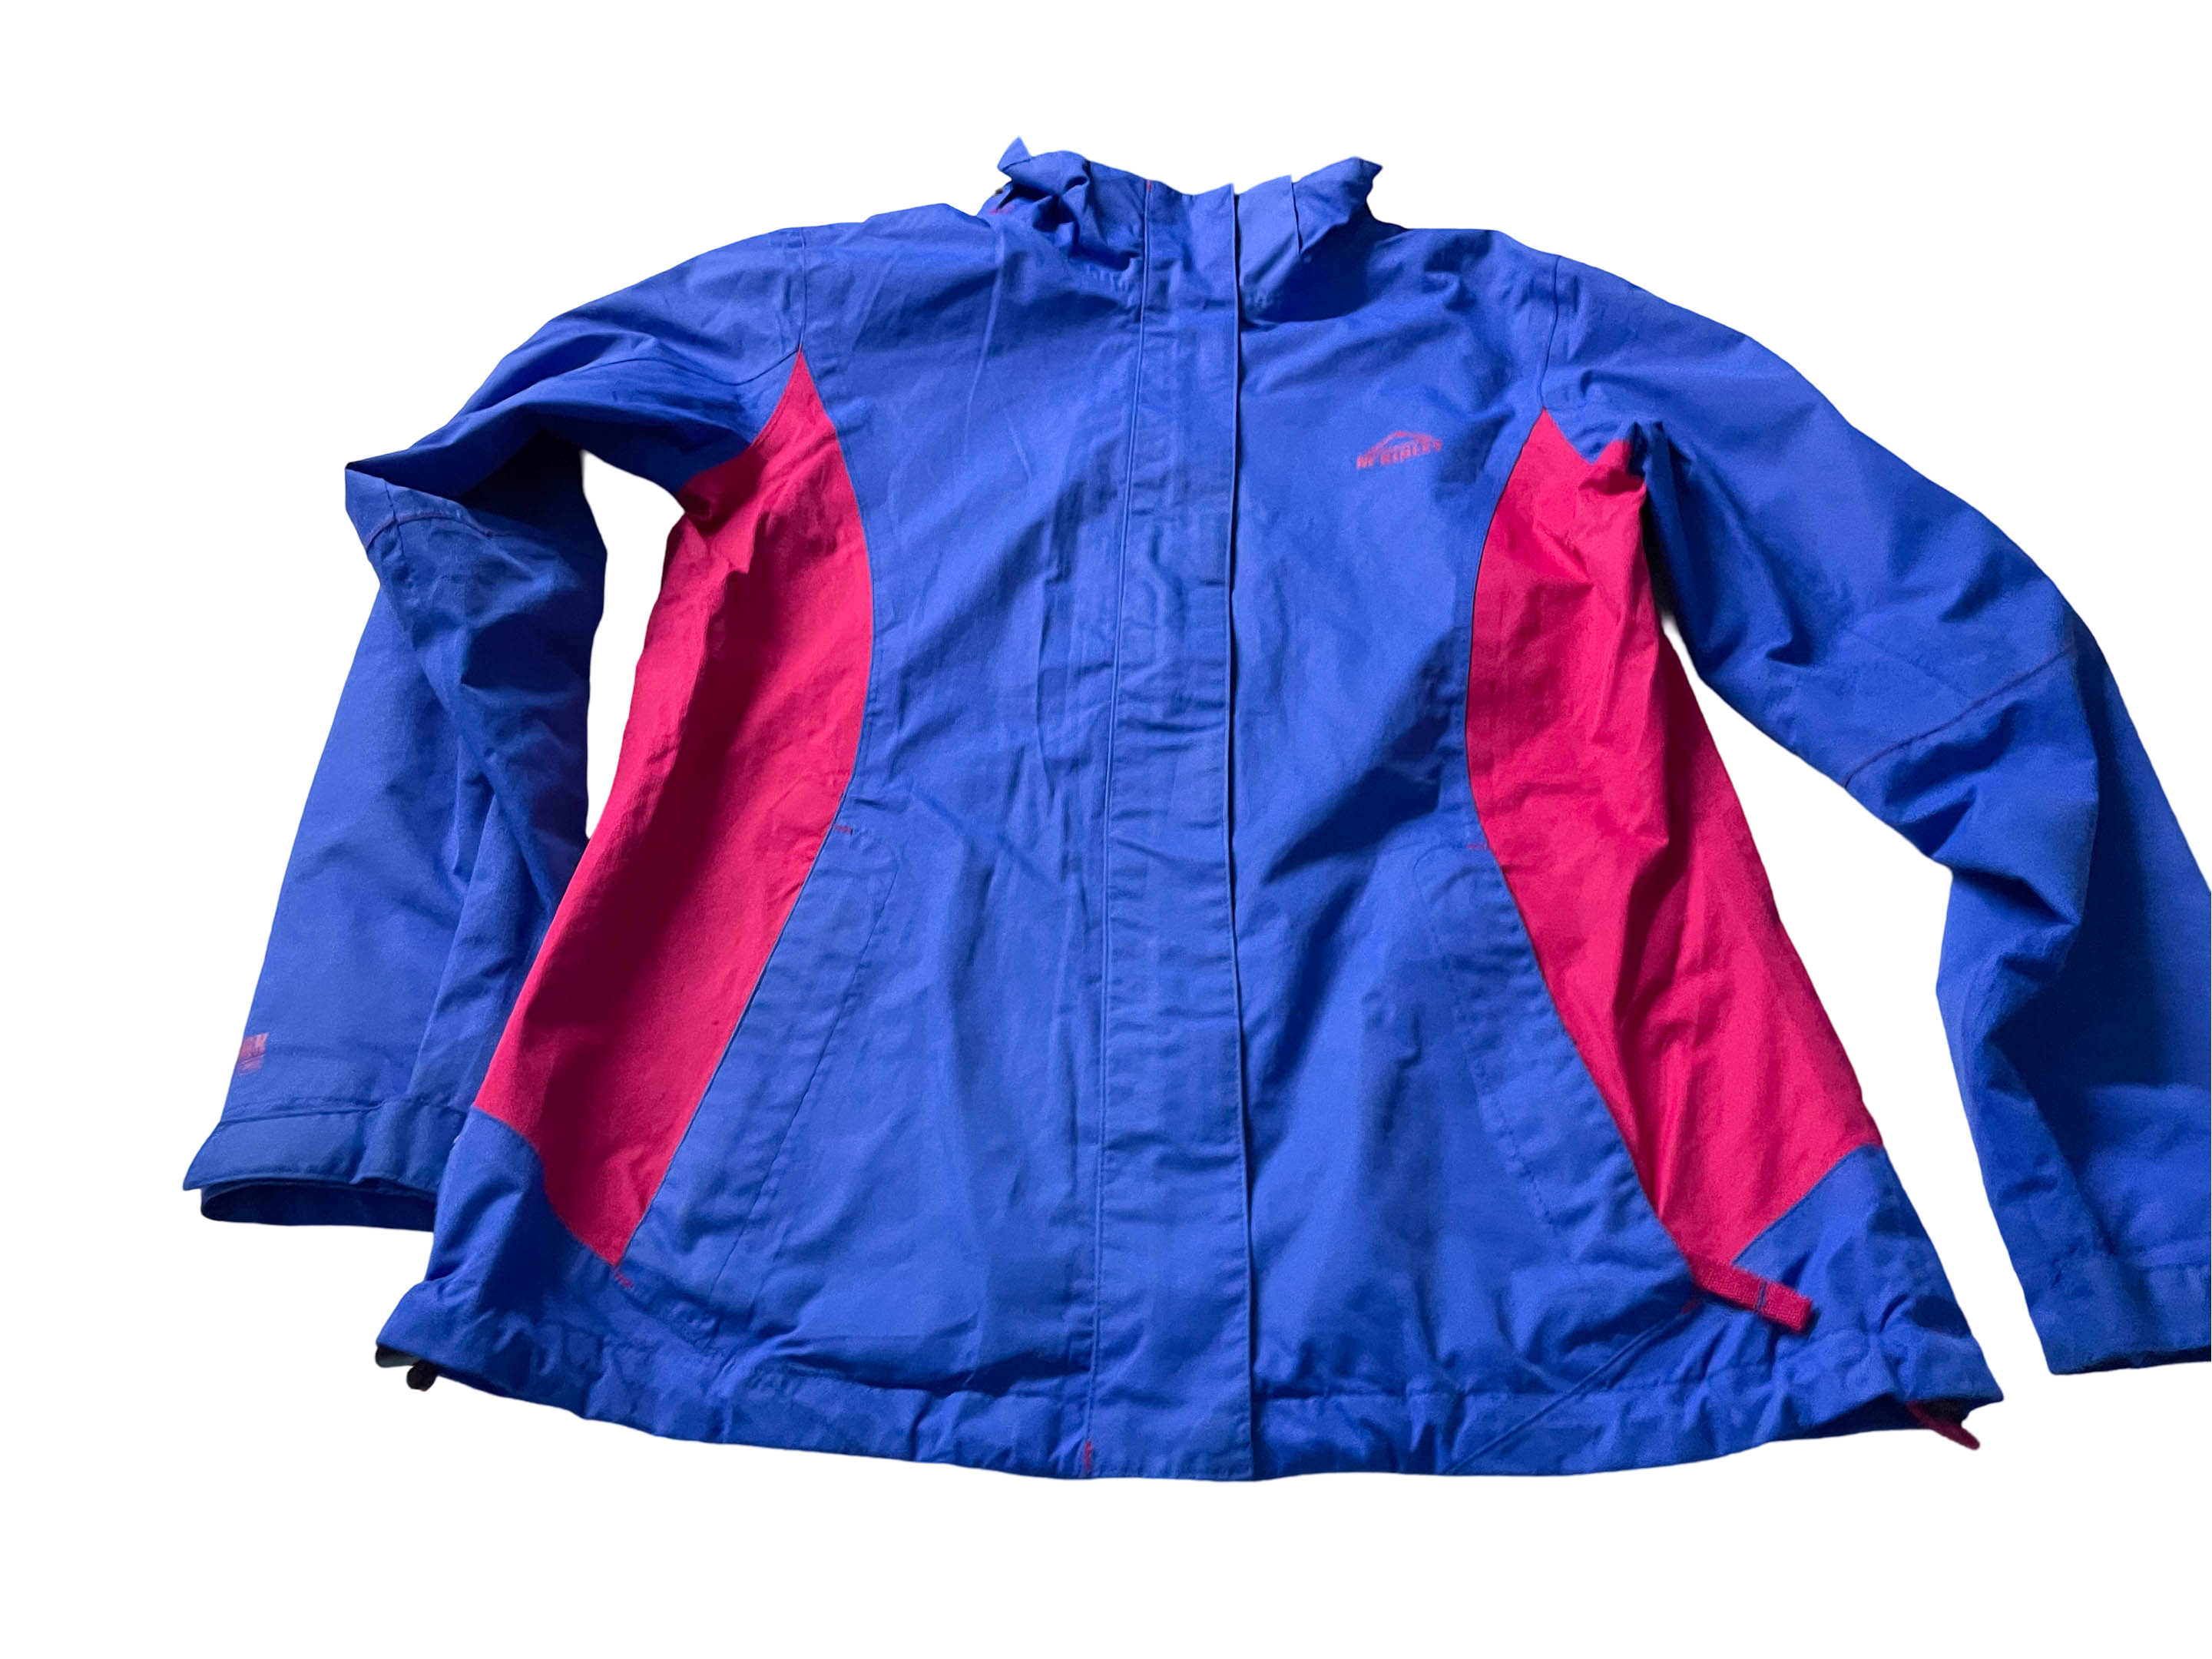 Vintage Women's Mckinley blue full zip wind breaker jacket in M/L Made in China|L29W18| SKU 4032